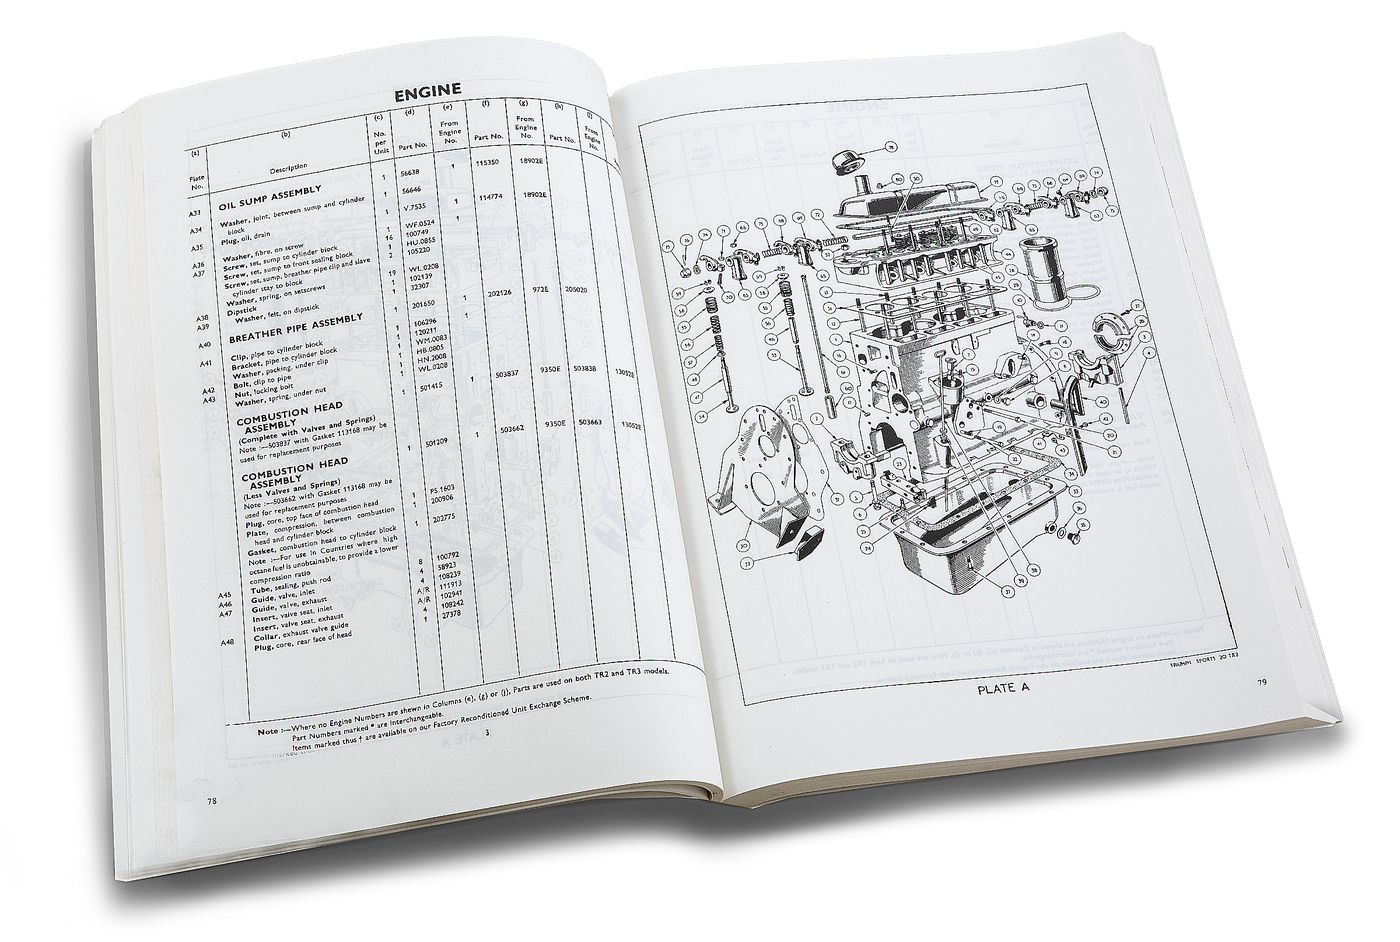 Ersatzteilkatalog
Parts catalogue
Catalogue de pièces détaché